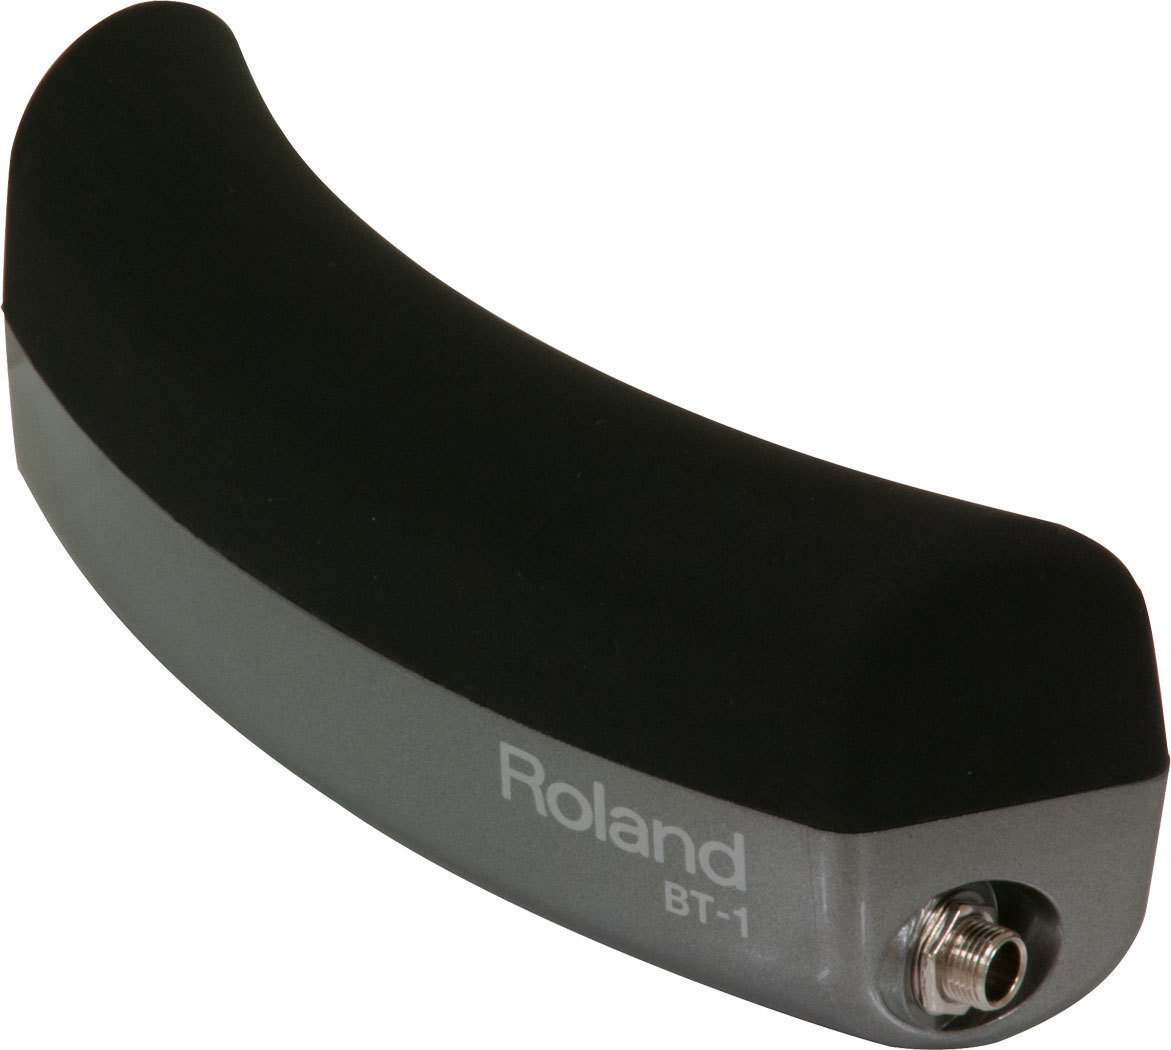 E-Drum Pad Roland BT-1